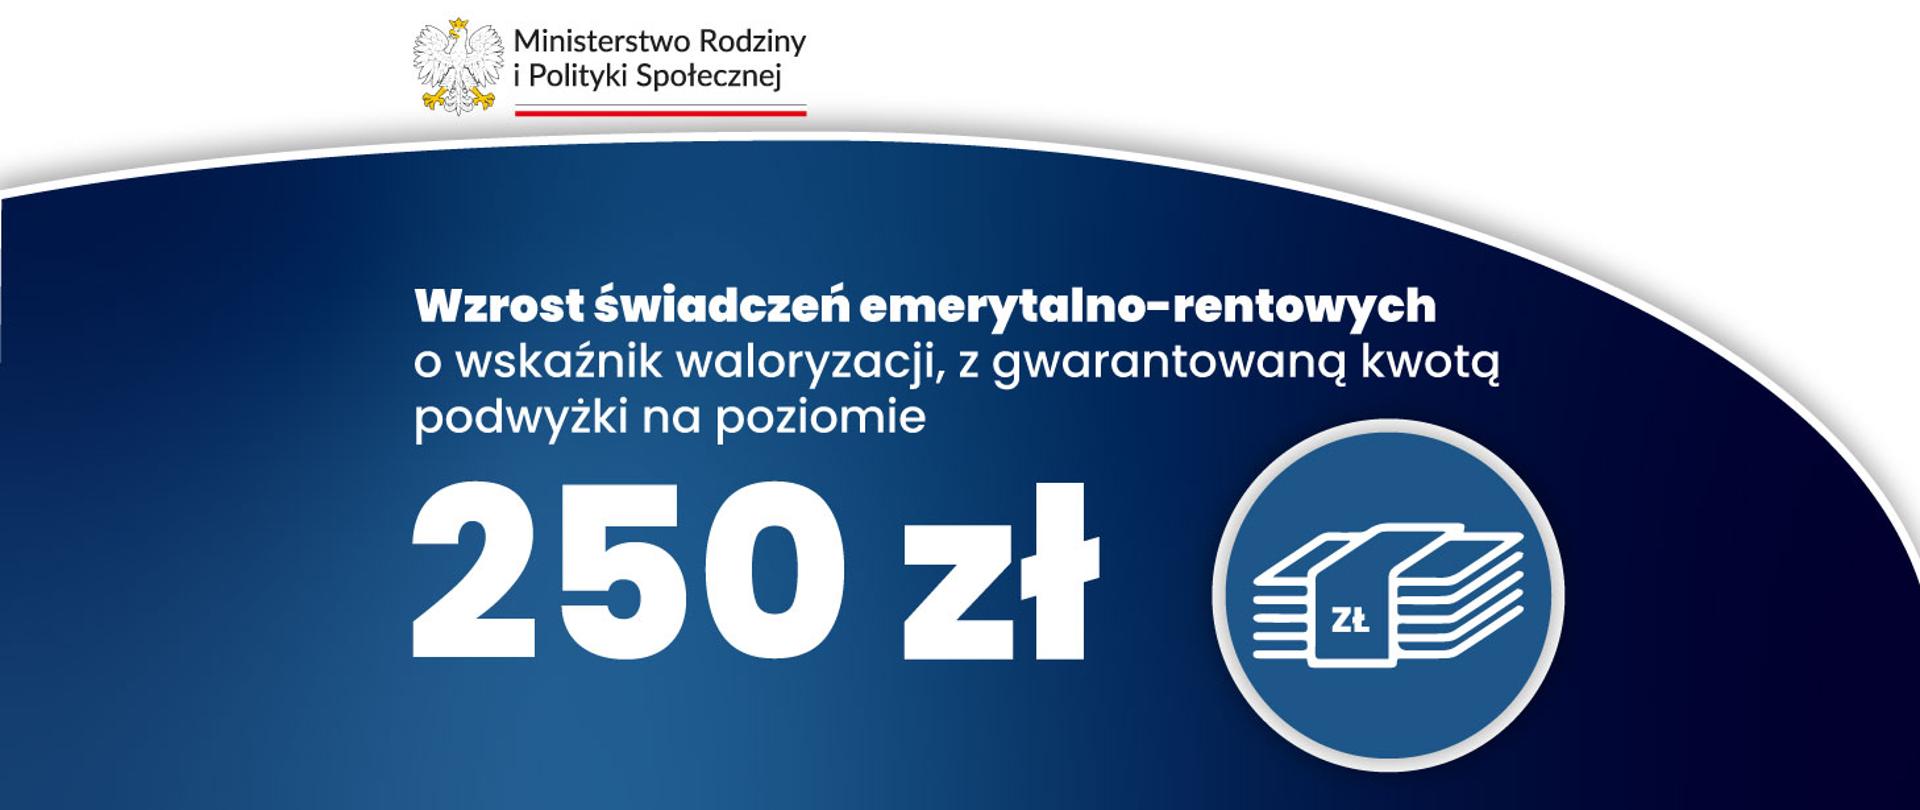 Grafika z tekstem: Wzrost świadczeń emerytalno-rentowych o wskaźnik waloryzacji, z gwarantowaną kwotą podwyżki na poziomie 250 zł